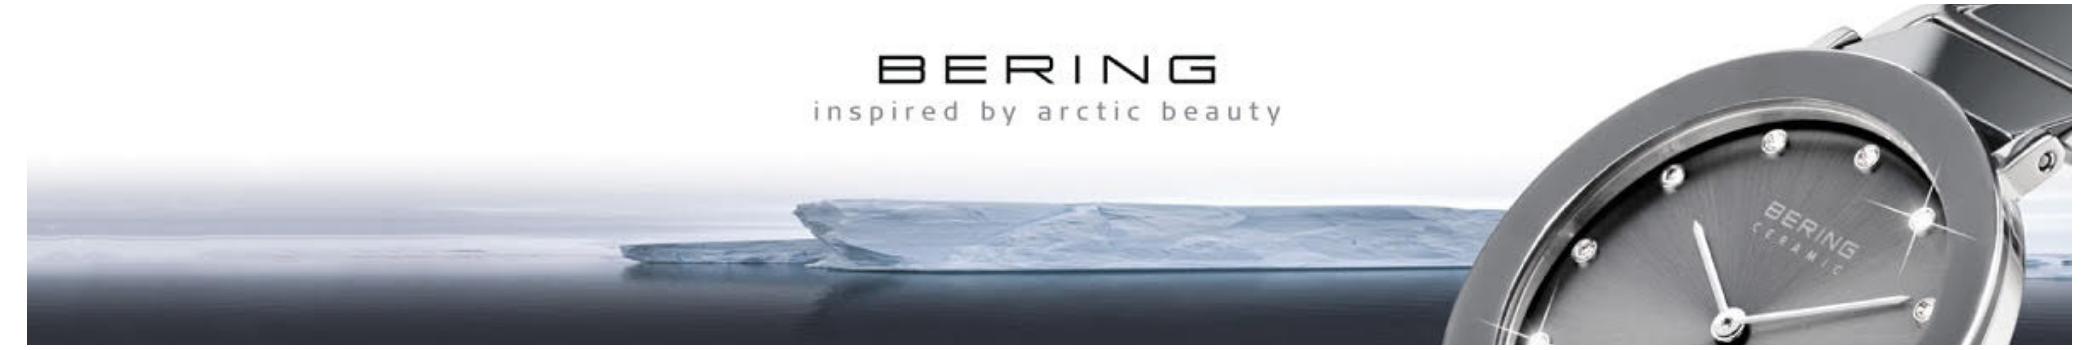 Diseño danés de líneas limpias inspirado en el ártico con cristal zafiro.